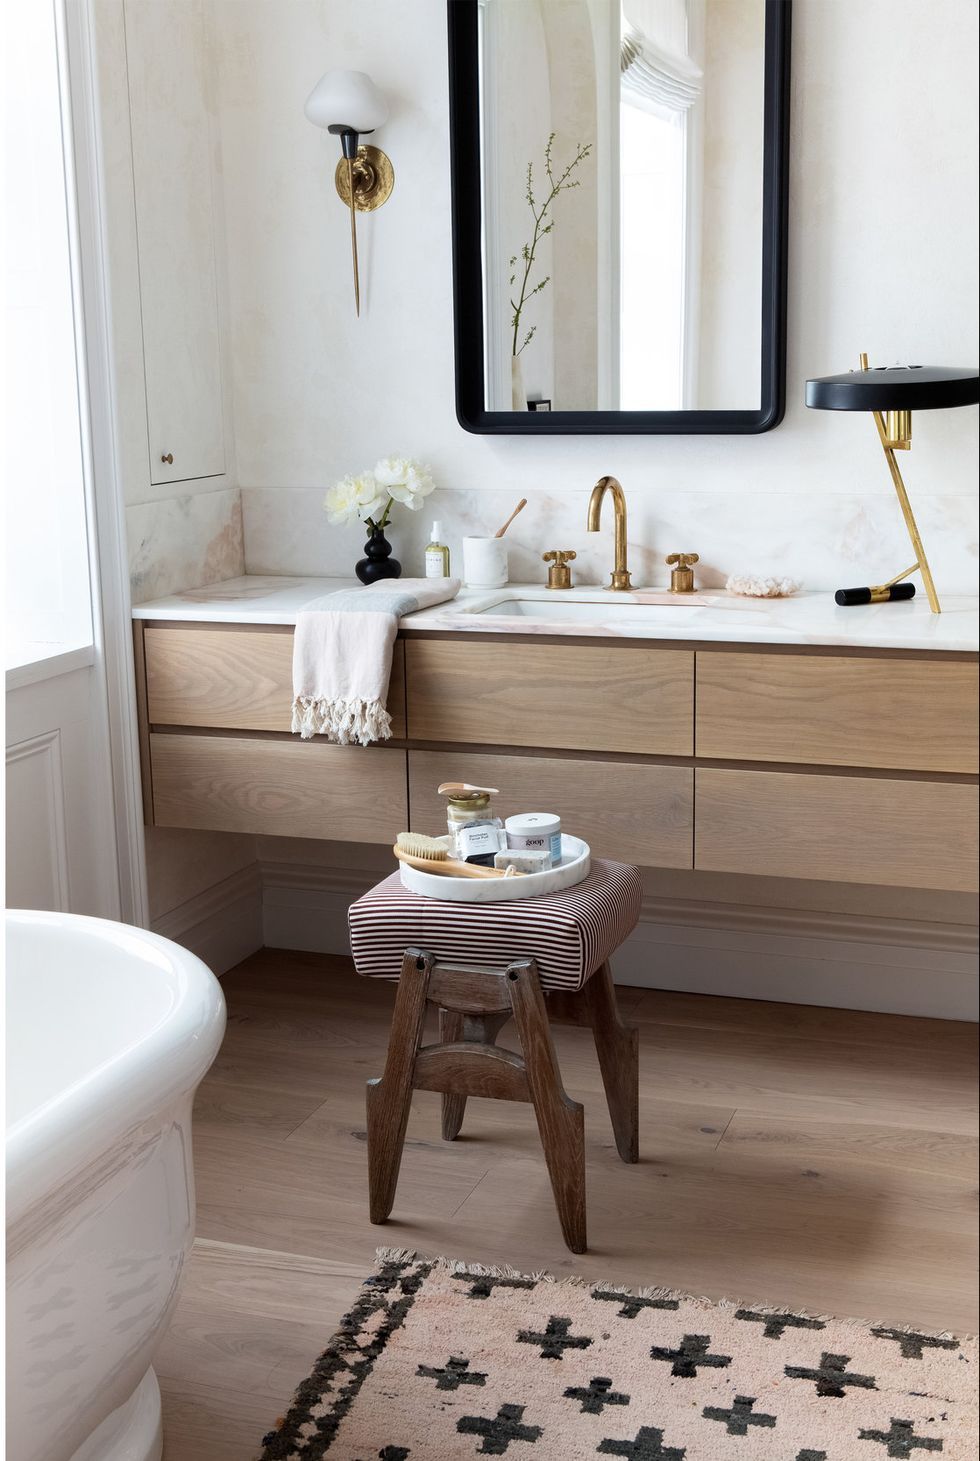 14 Bathroom Counter Organization Ideas - Metropolitan Bath & Tile